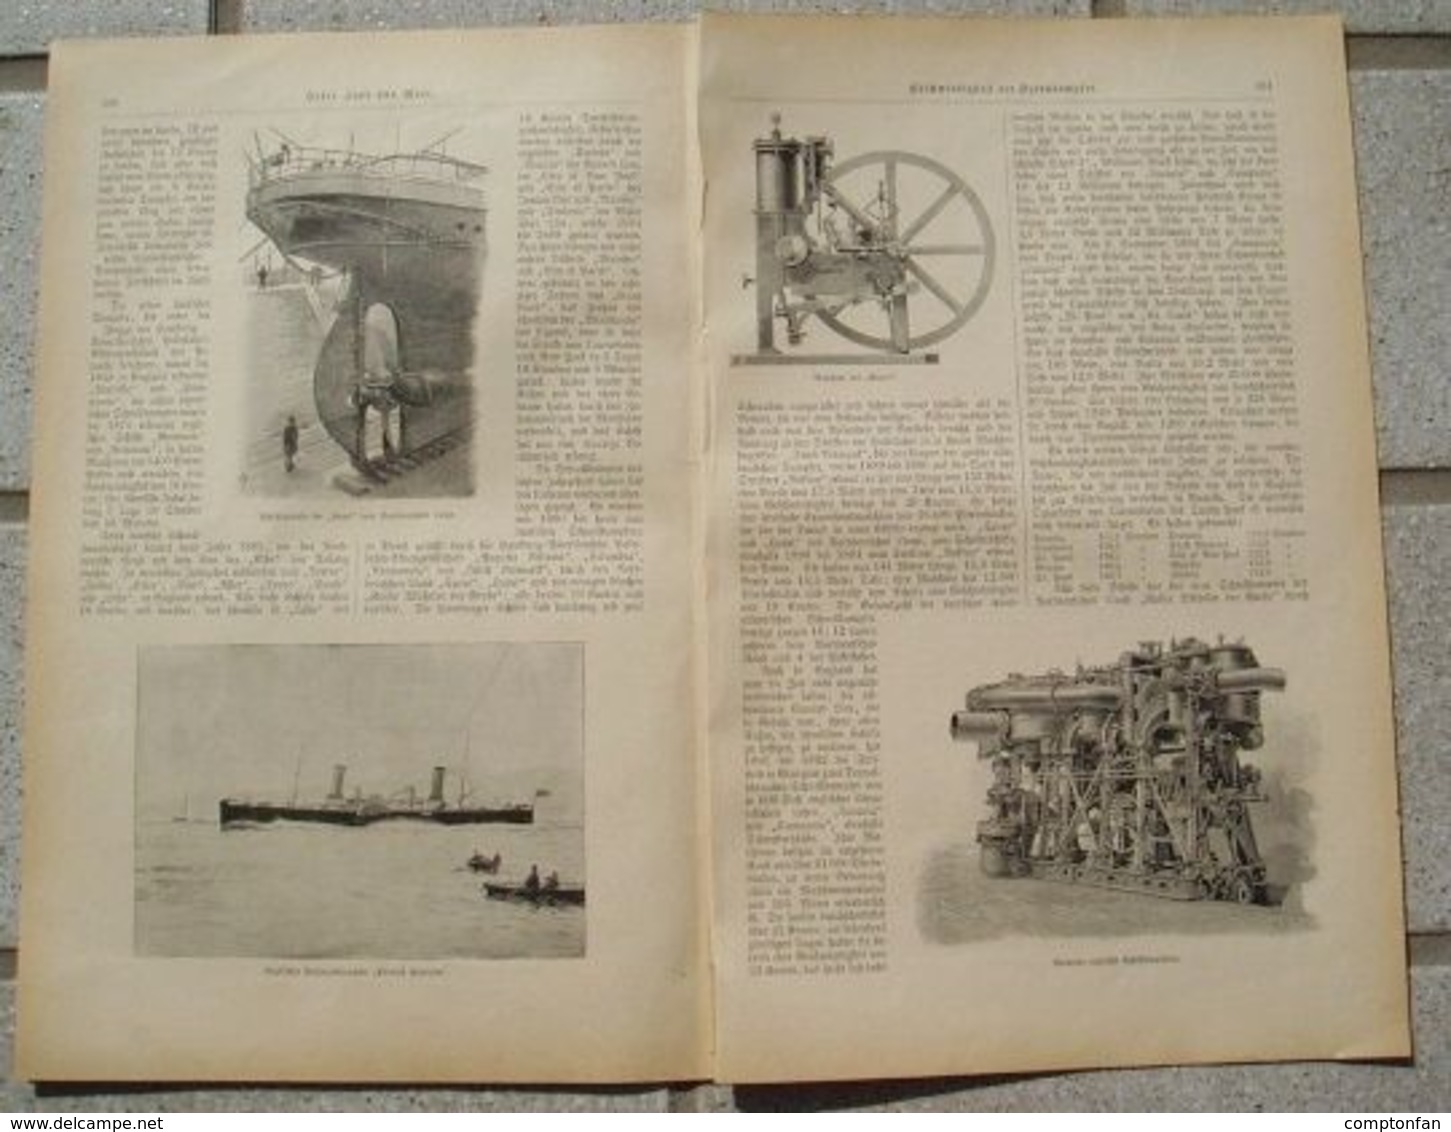 A102 089 Geschwindigkeit Der Ozeandampfer Artikel Mit 10 Bildern Von 1897 !! - Trasporti